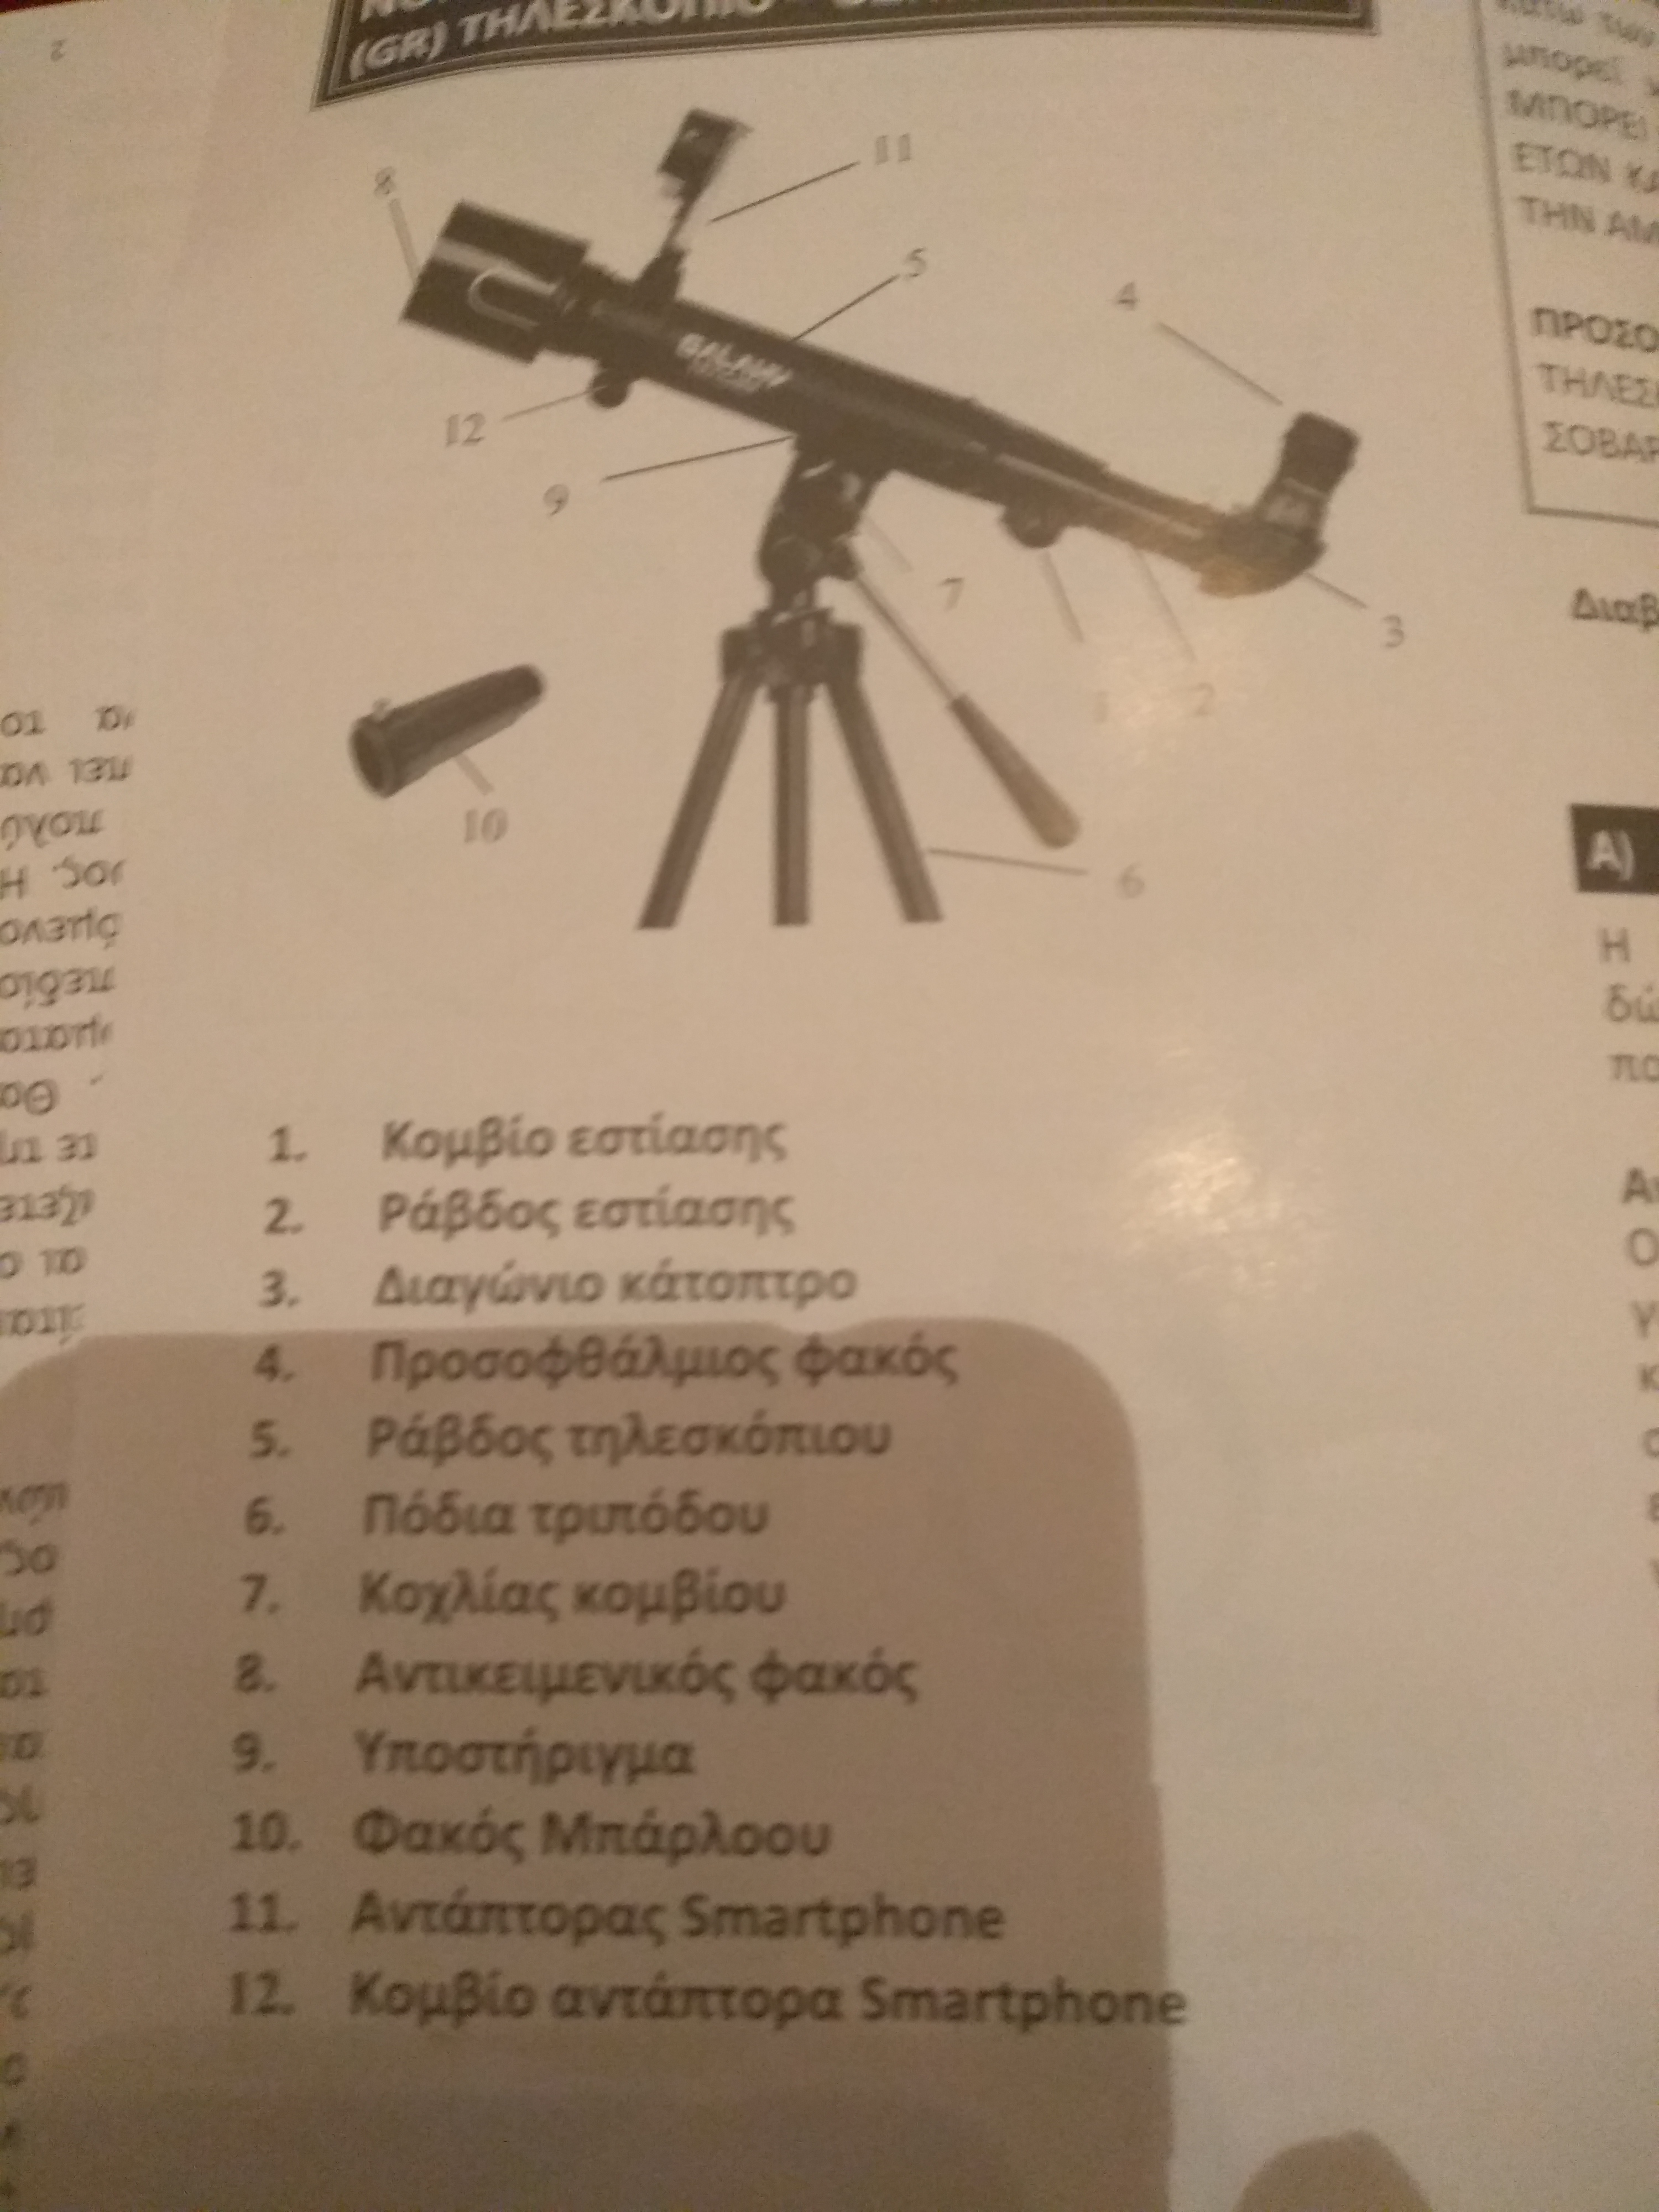 Πρόβλημα με το τηλεσκόπιο - Τηλεσκόπια - AstroVox